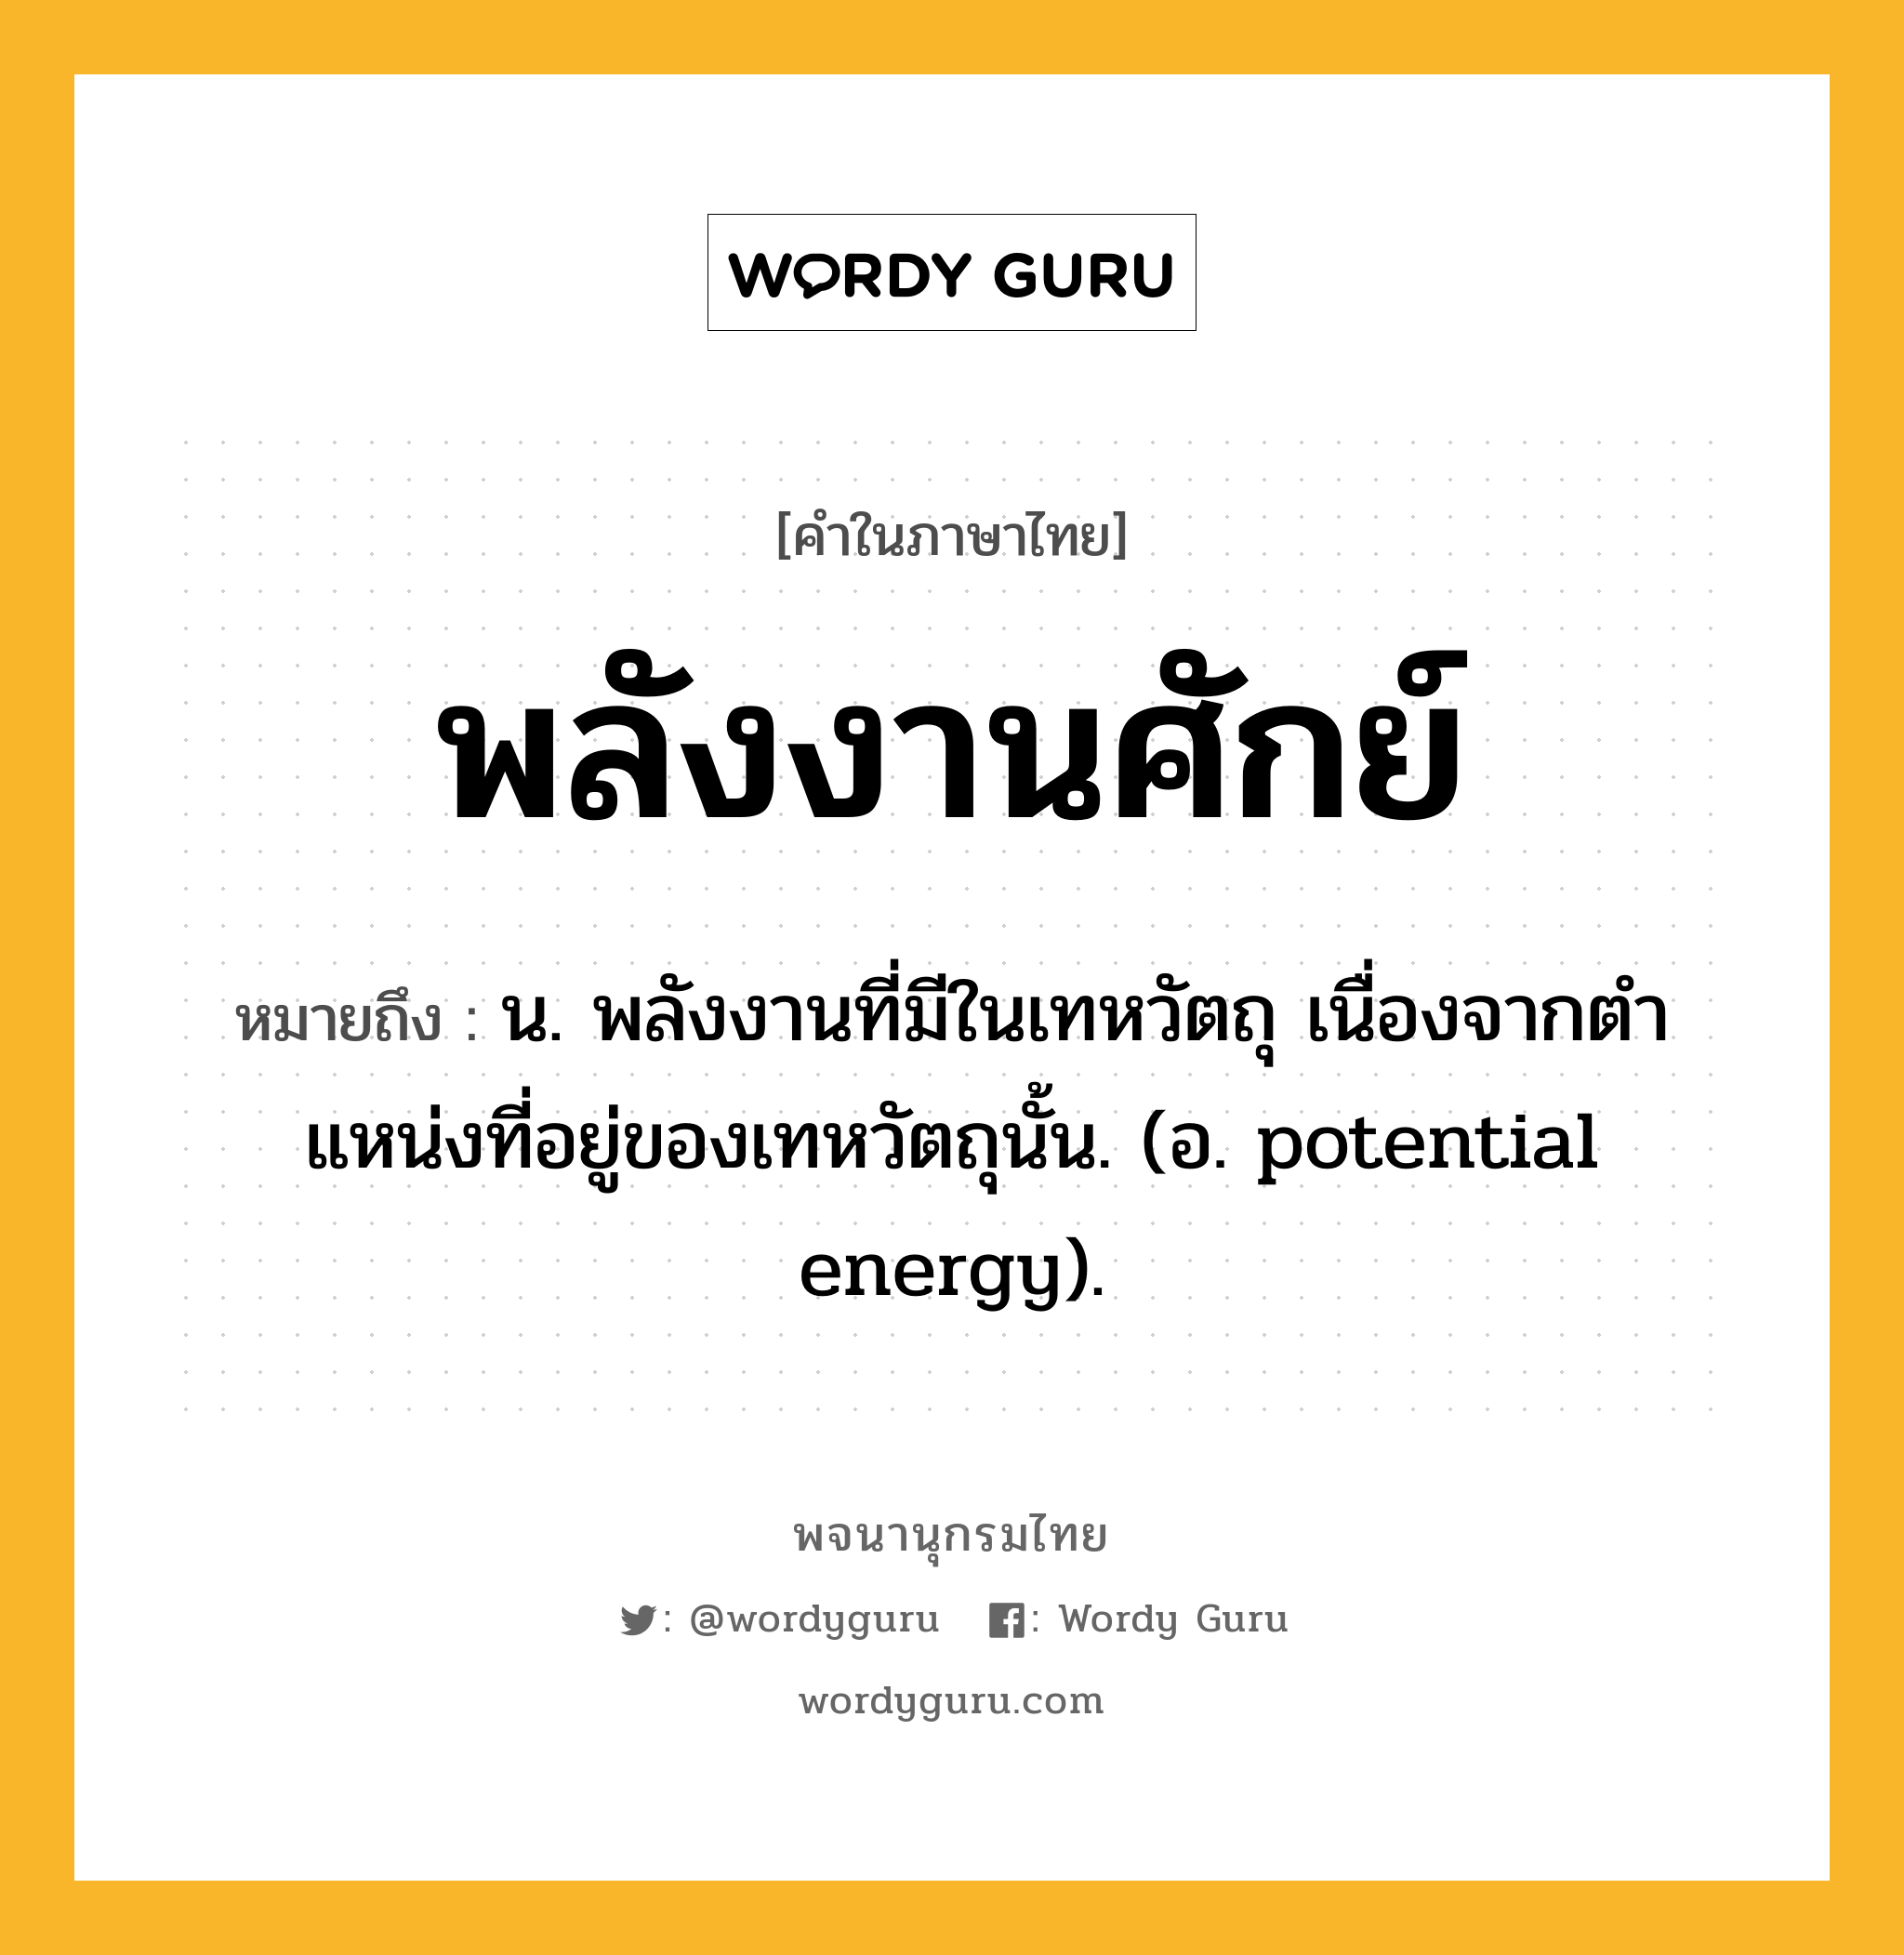 พลังงานศักย์ ความหมาย หมายถึงอะไร?, คำในภาษาไทย พลังงานศักย์ หมายถึง น. พลังงานที่มีในเทหวัตถุ เนื่องจากตําแหน่งที่อยู่ของเทหวัตถุนั้น. (อ. potential energy).